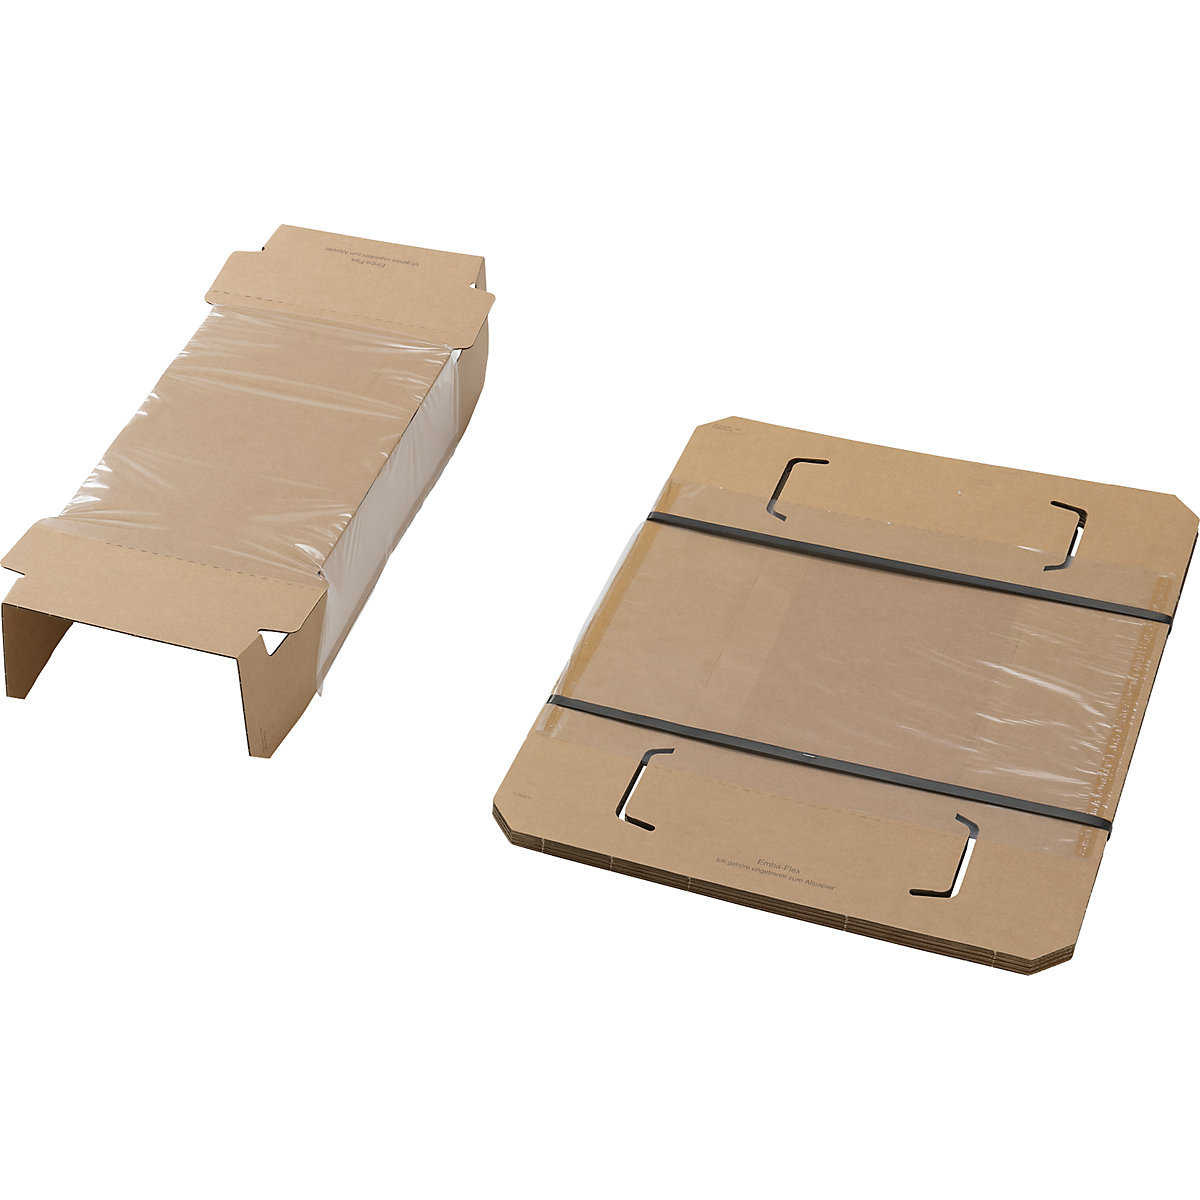 Embalaje de fijación, con pieza interior de fijación y caja protectora externa, UE 25 unid., para dimensiones de paquete de L x A x H 360 x 240 x 100 mm-4